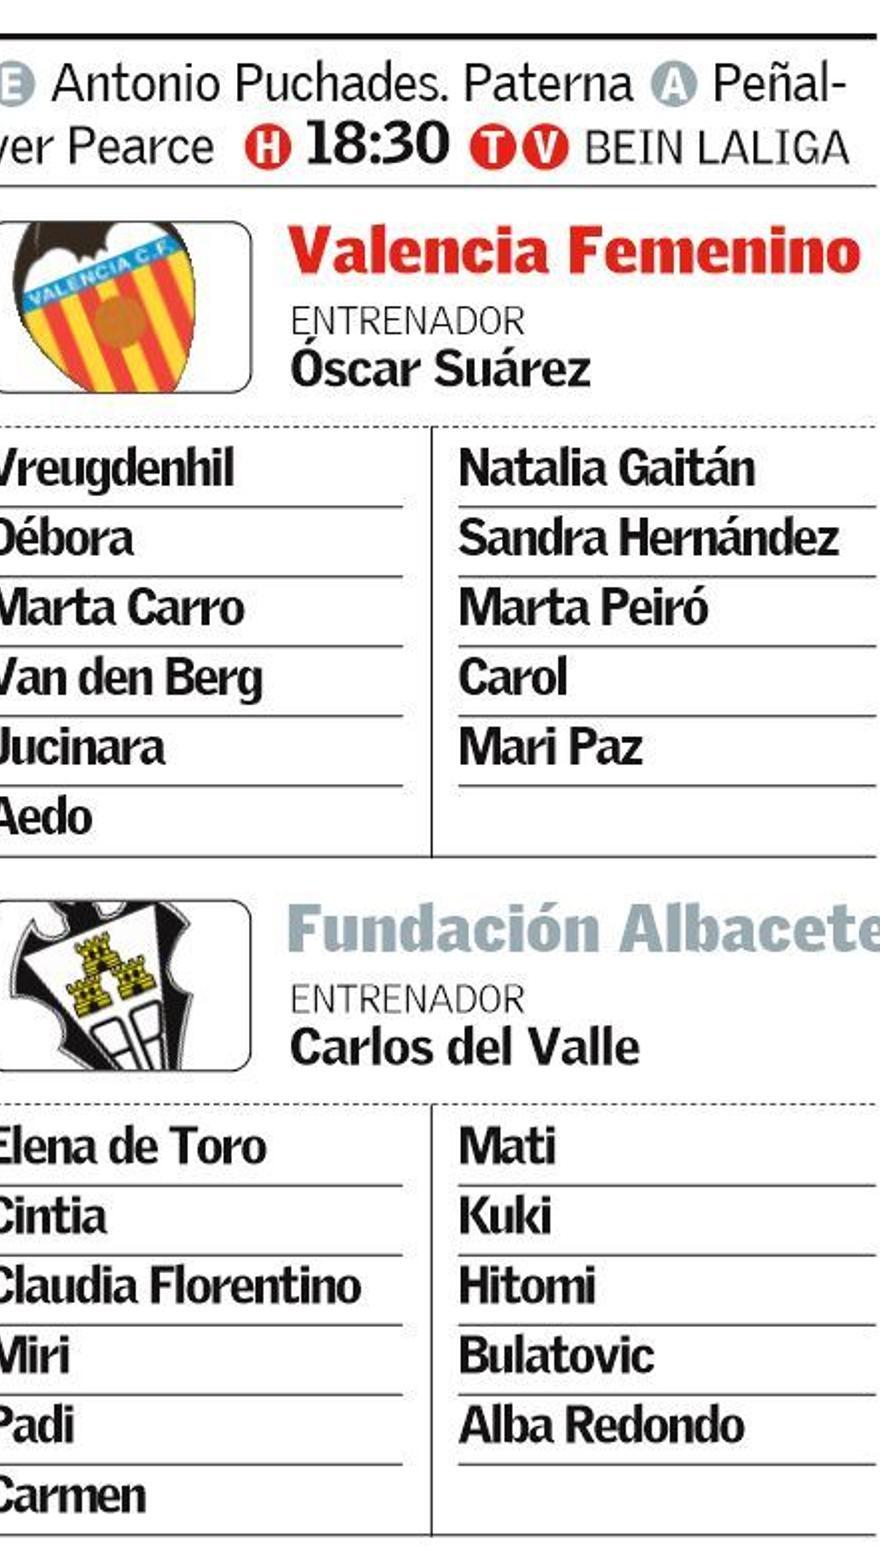 Liga Iberdrola: El primero de los tres partidos en casa para el Valencia  Femenino frente al Fundación Albacete